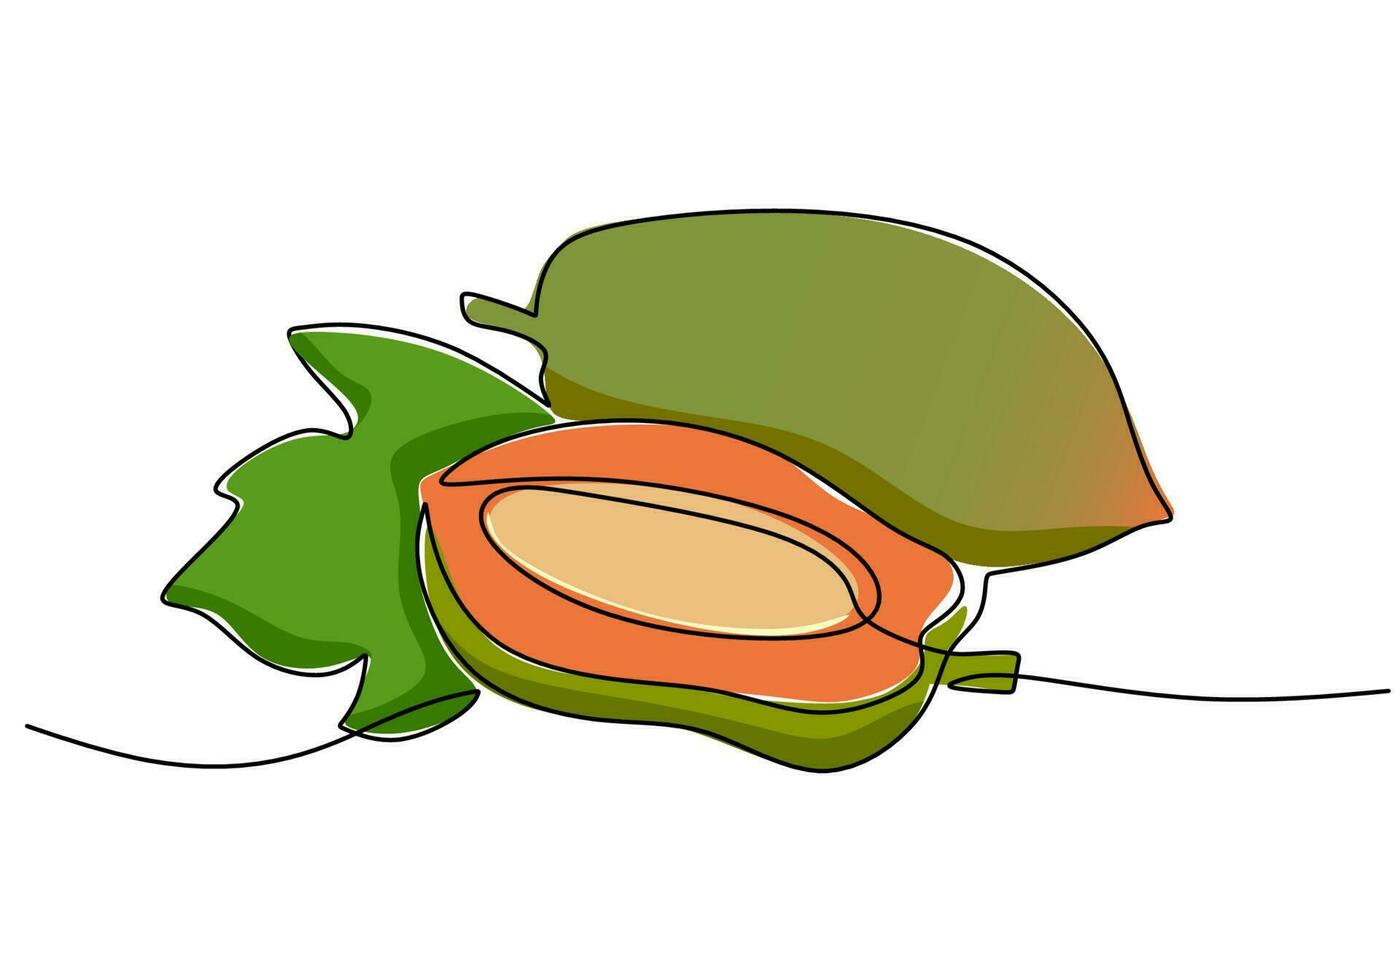 papaja doorlopend een lijn tekening, fruit vector illustratie.